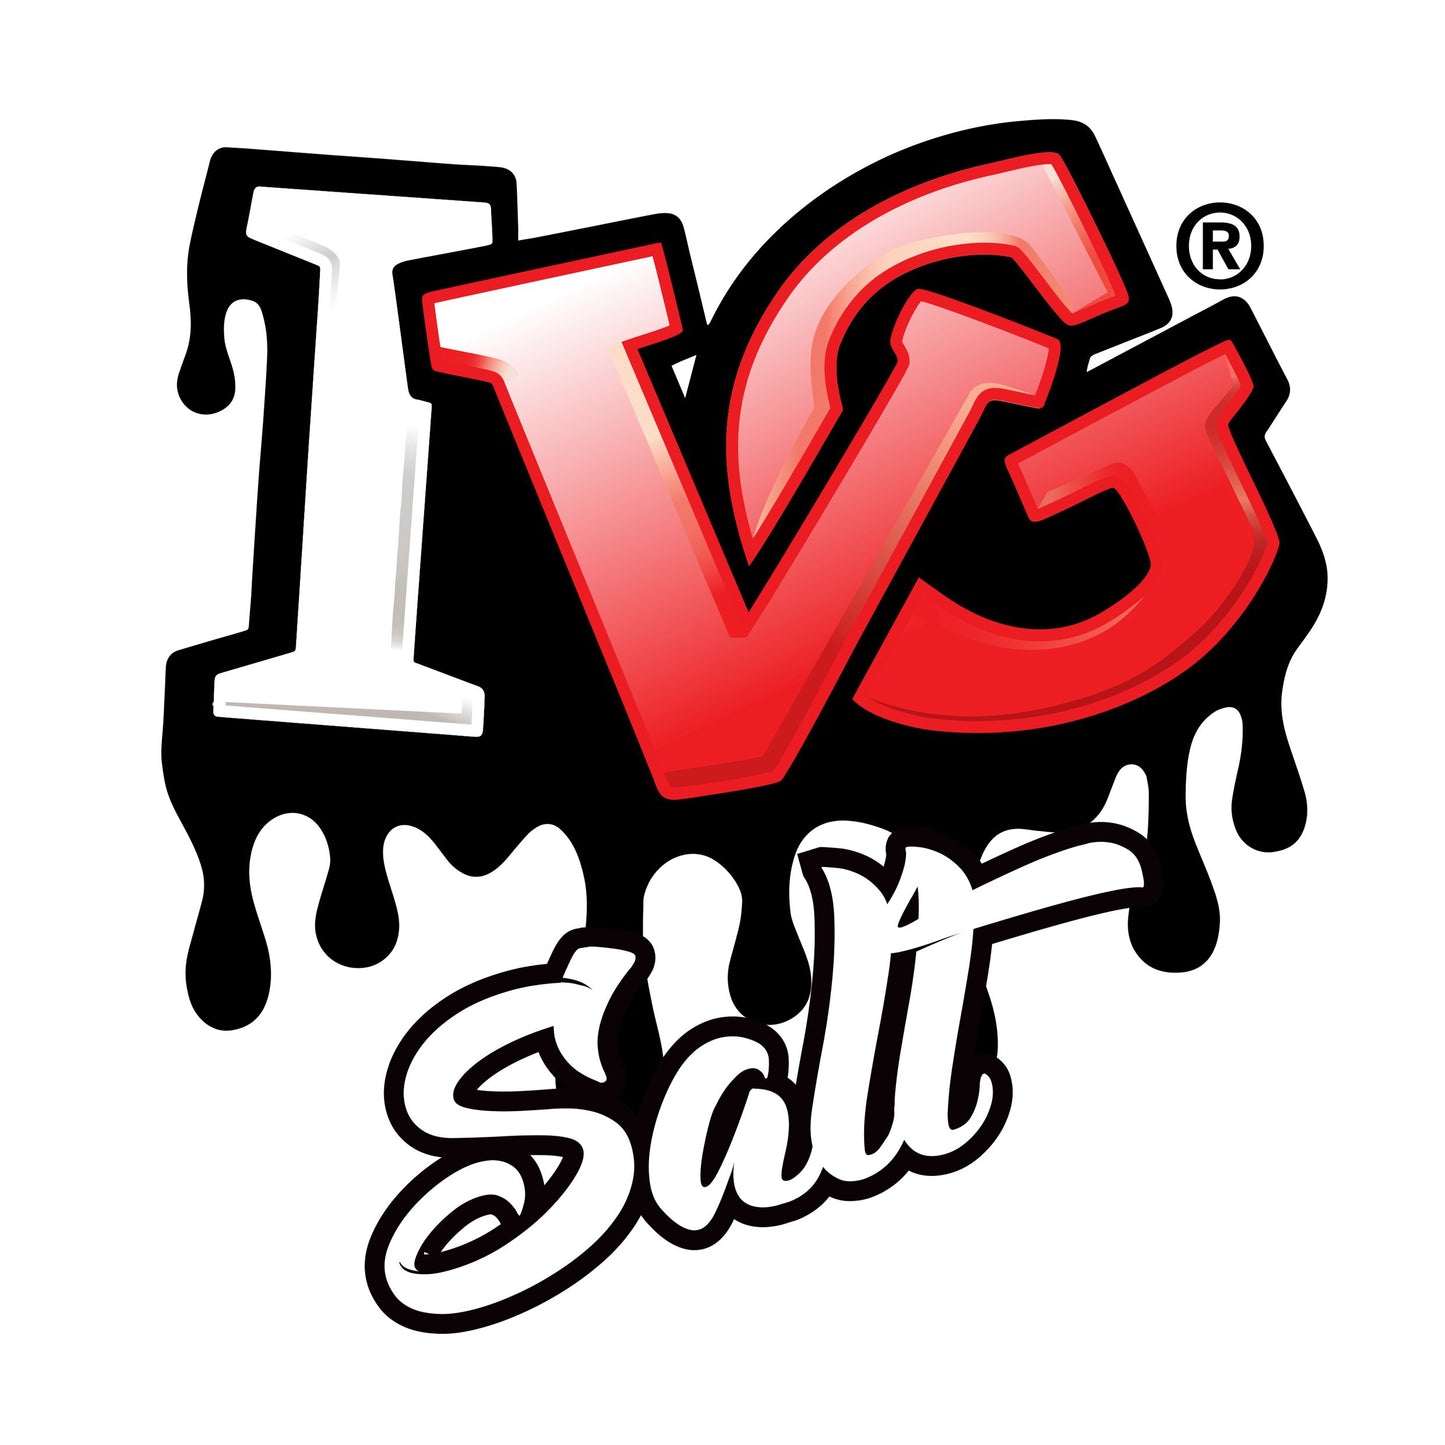 Ivg Salt 10ml 10mg and 20mg